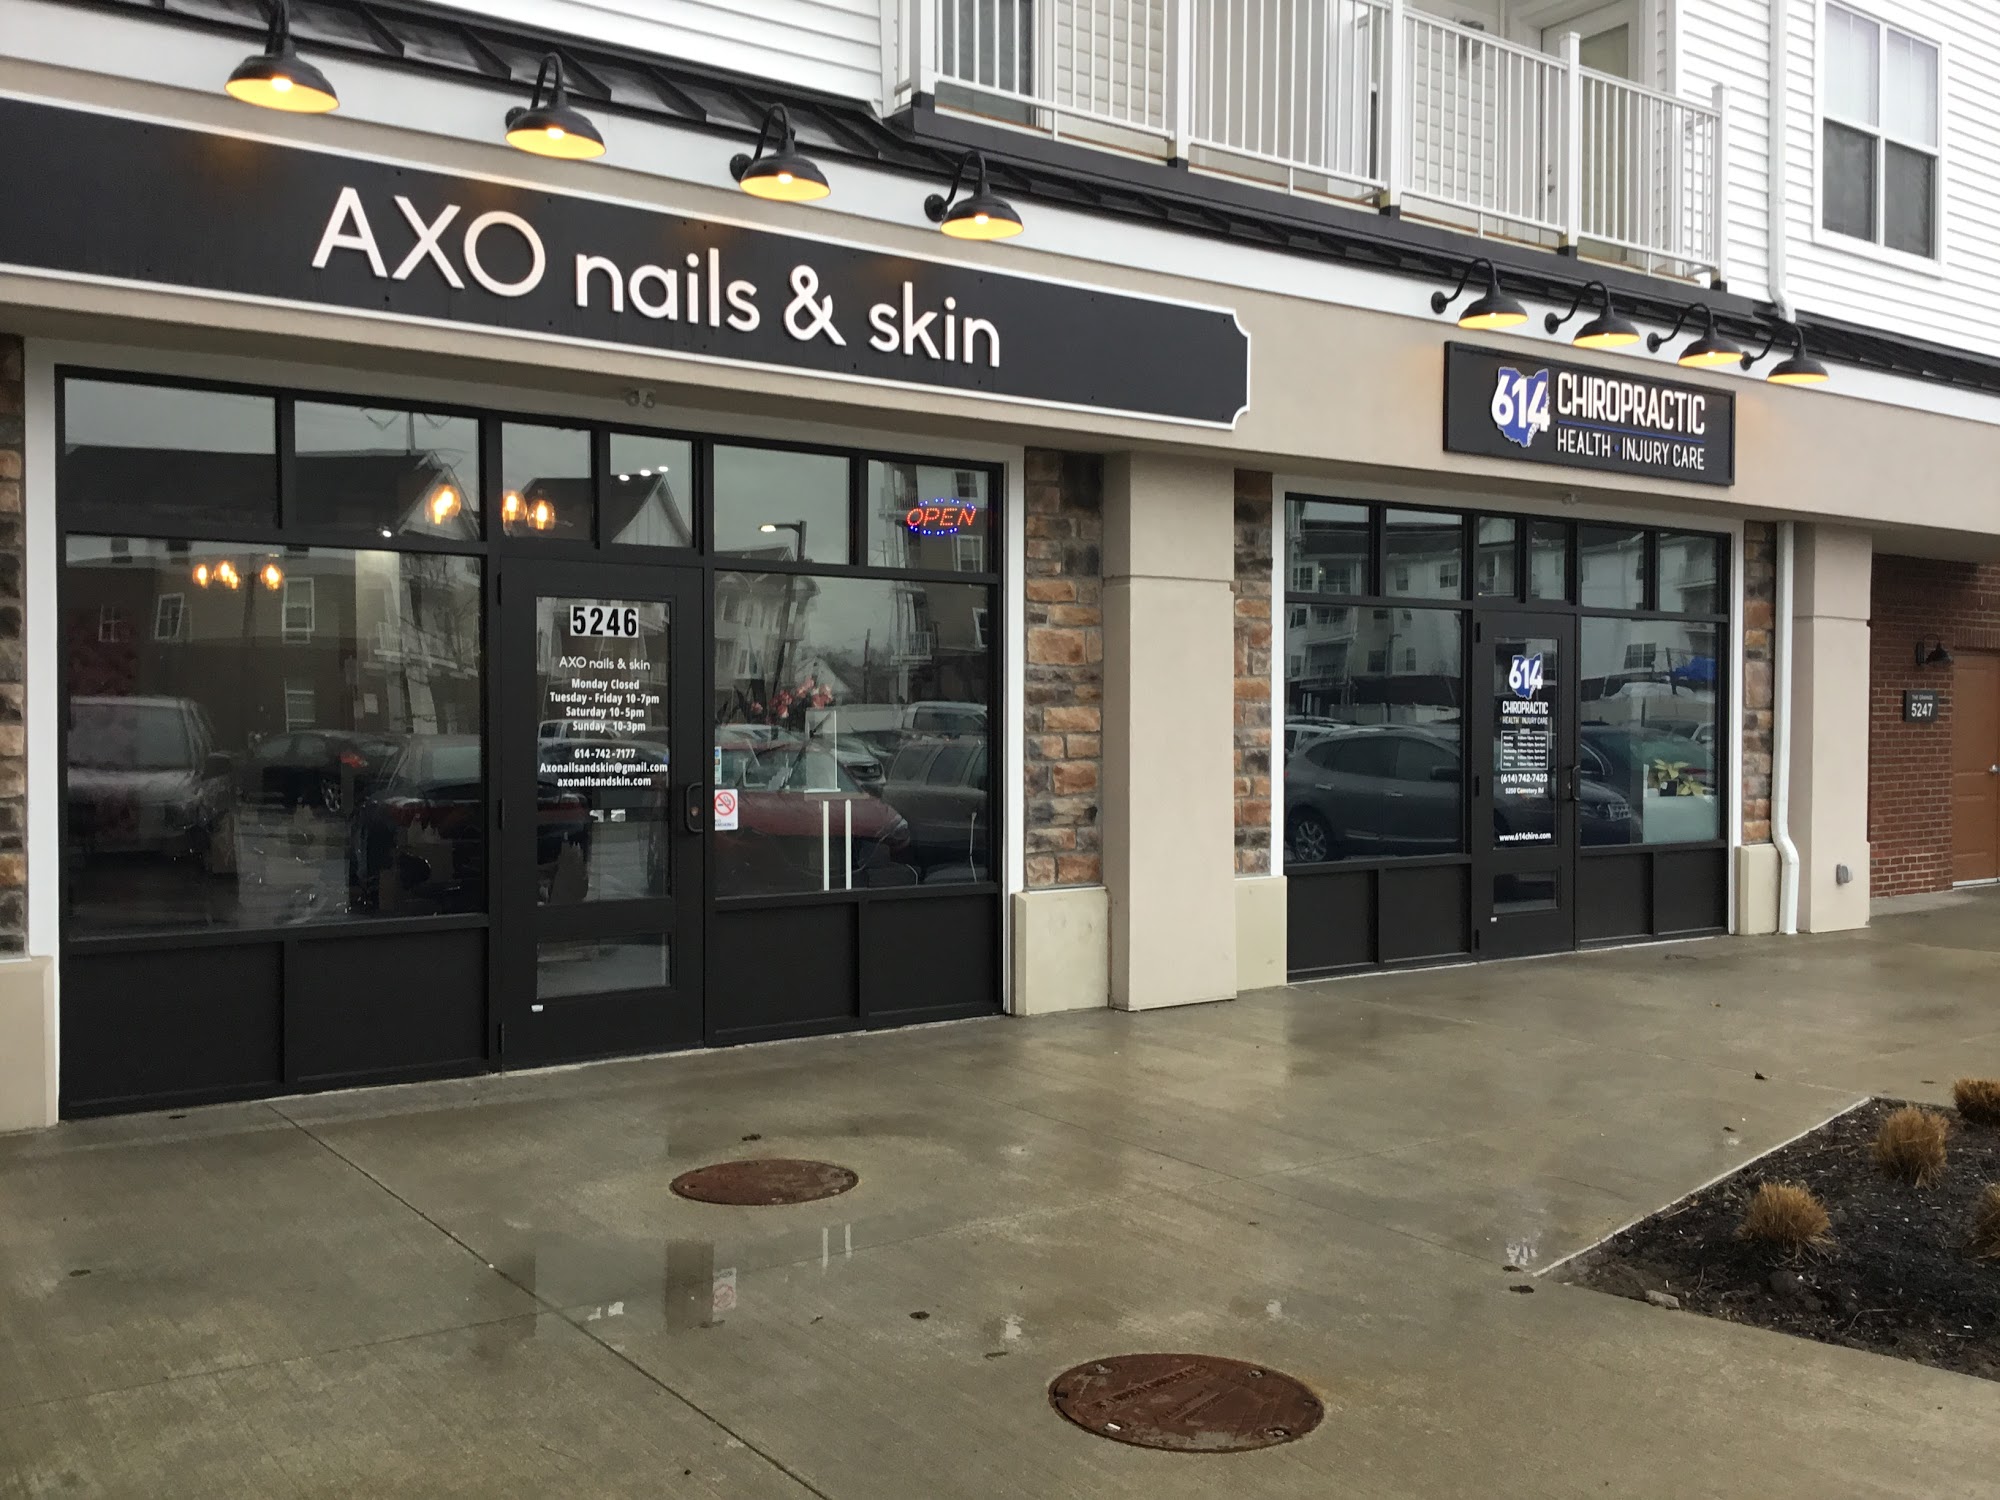 AXO nails & skin